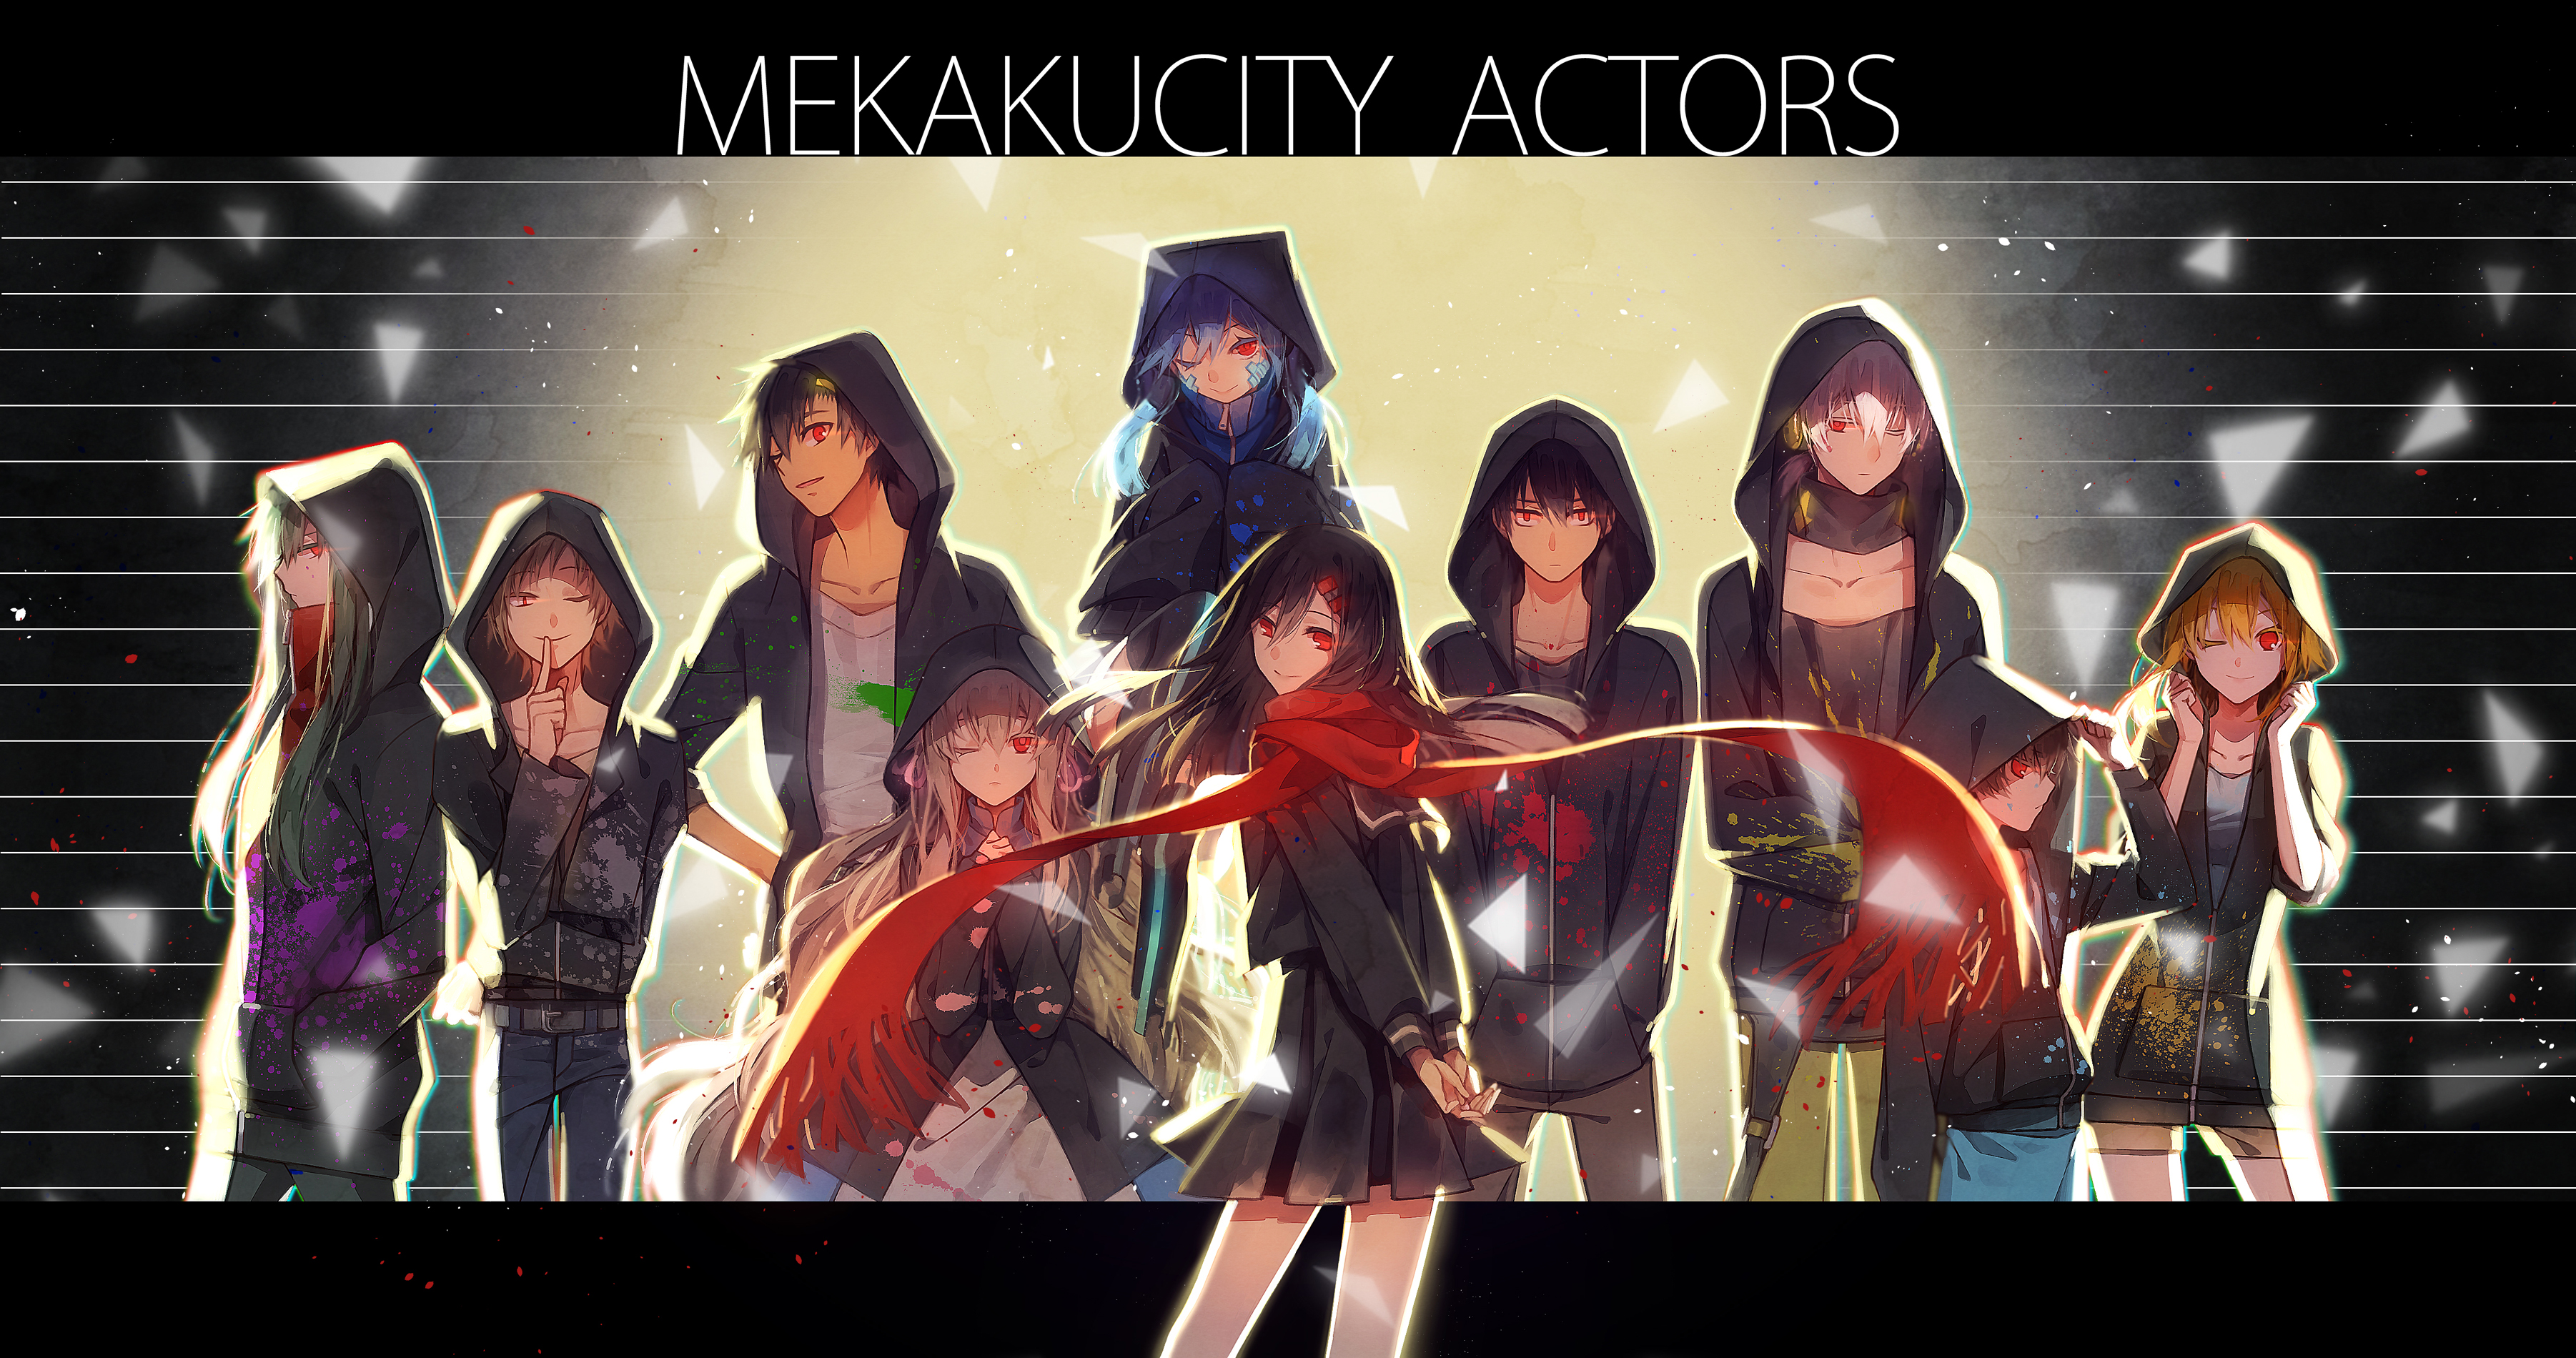 Mekakucity Actors Wallpapers - Wallpaper Cave